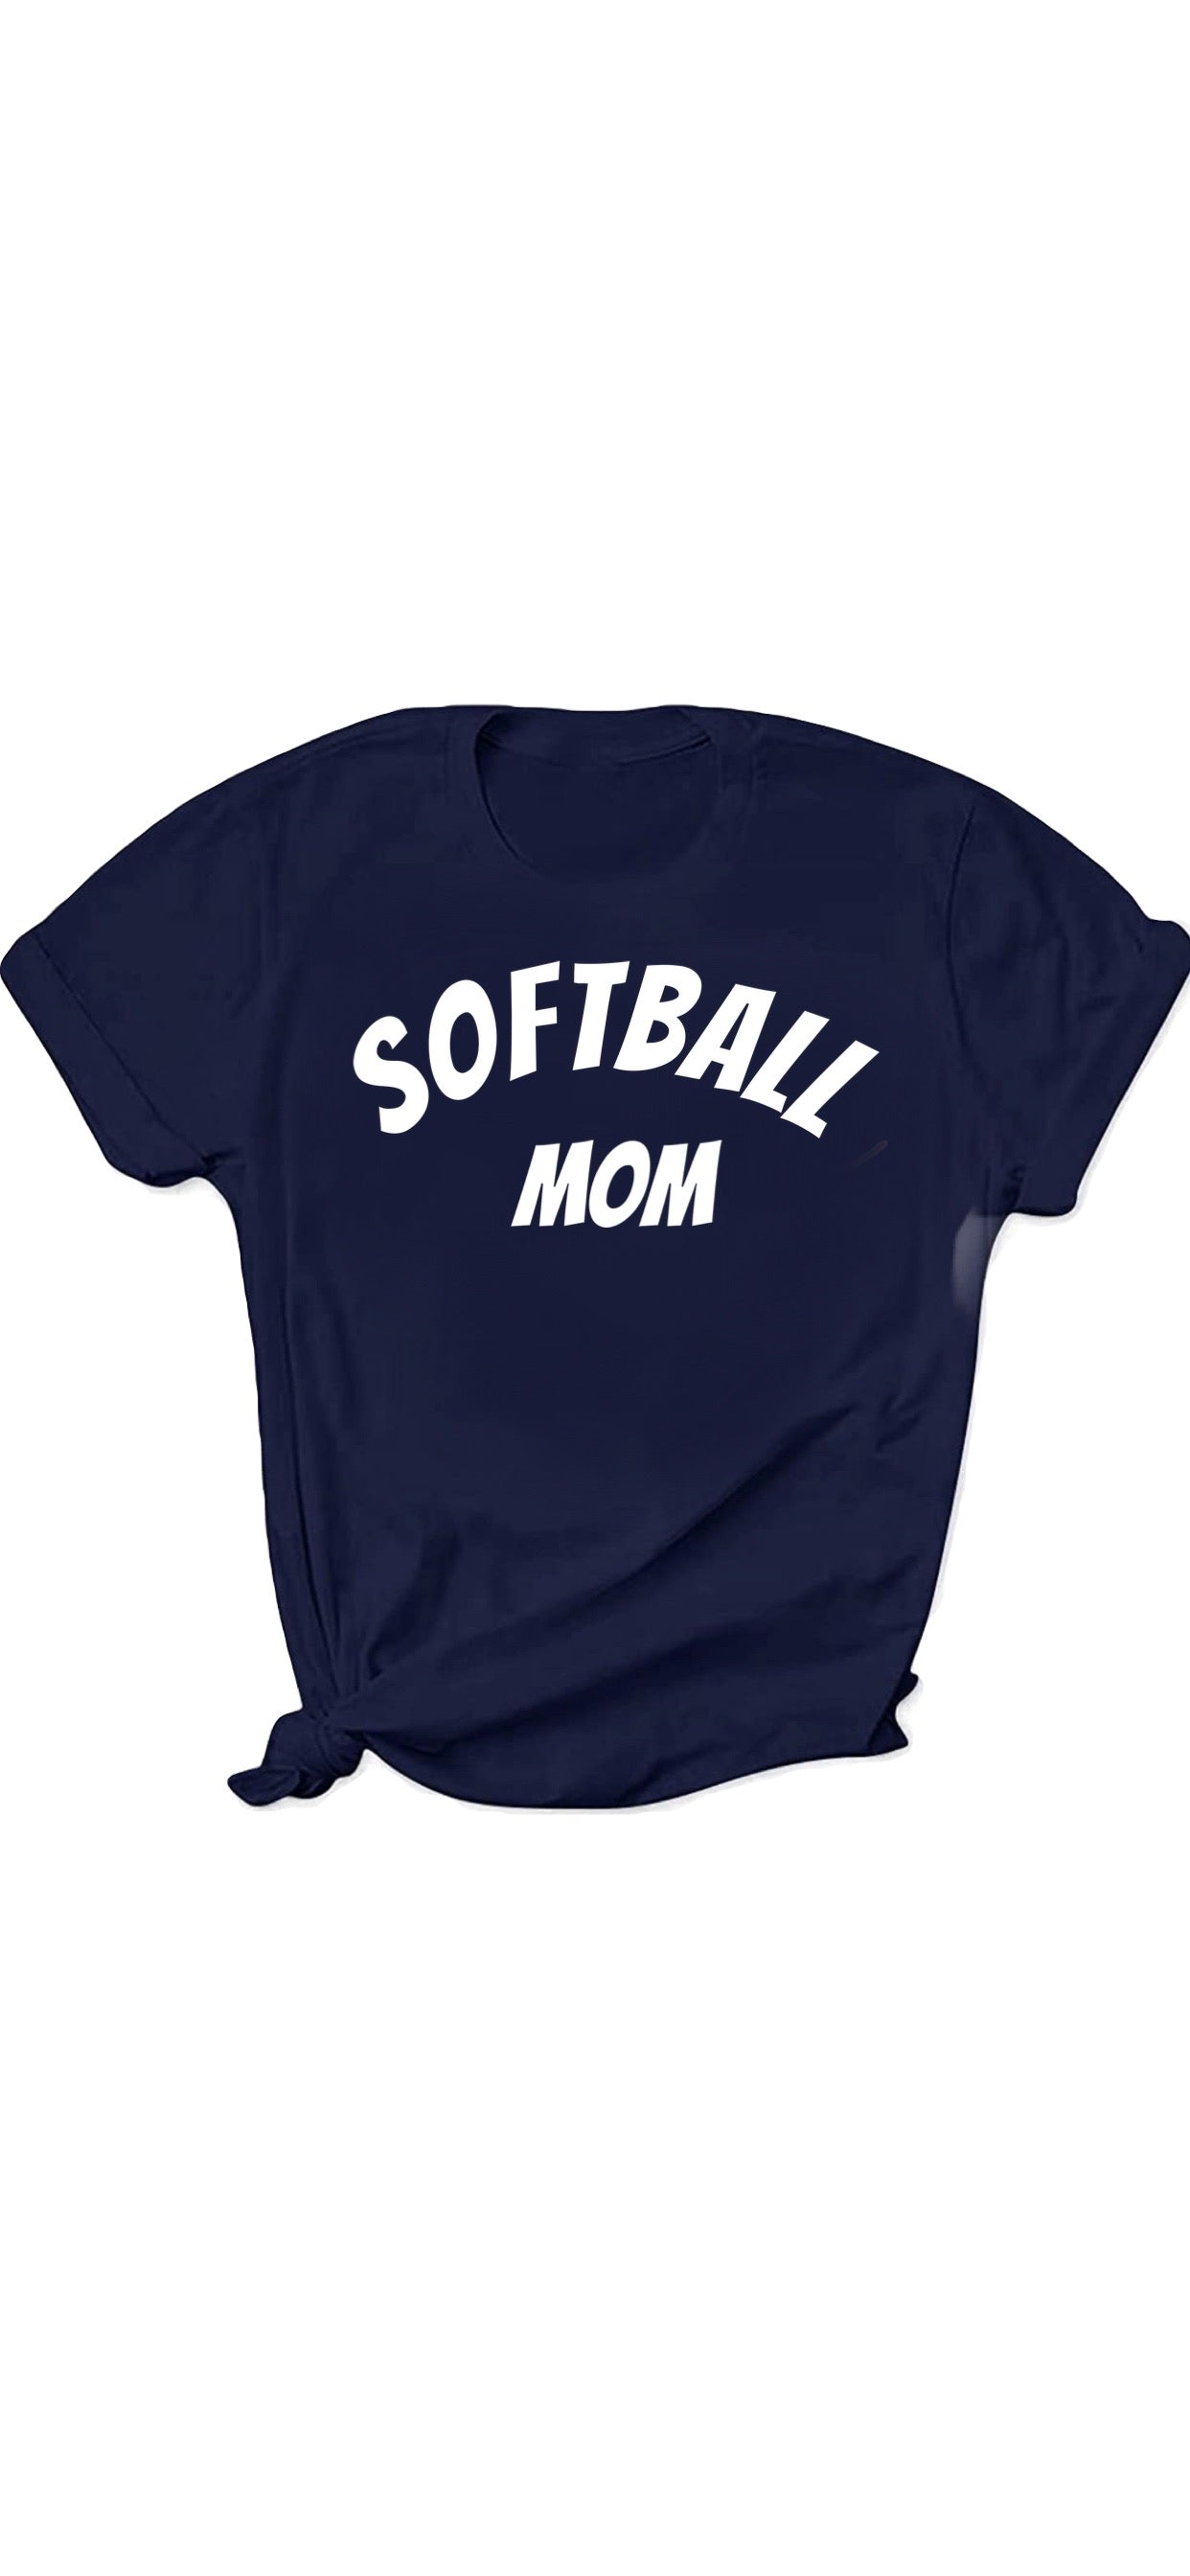 Softball mom shirt, softball tee, softball shirt, mom shirt